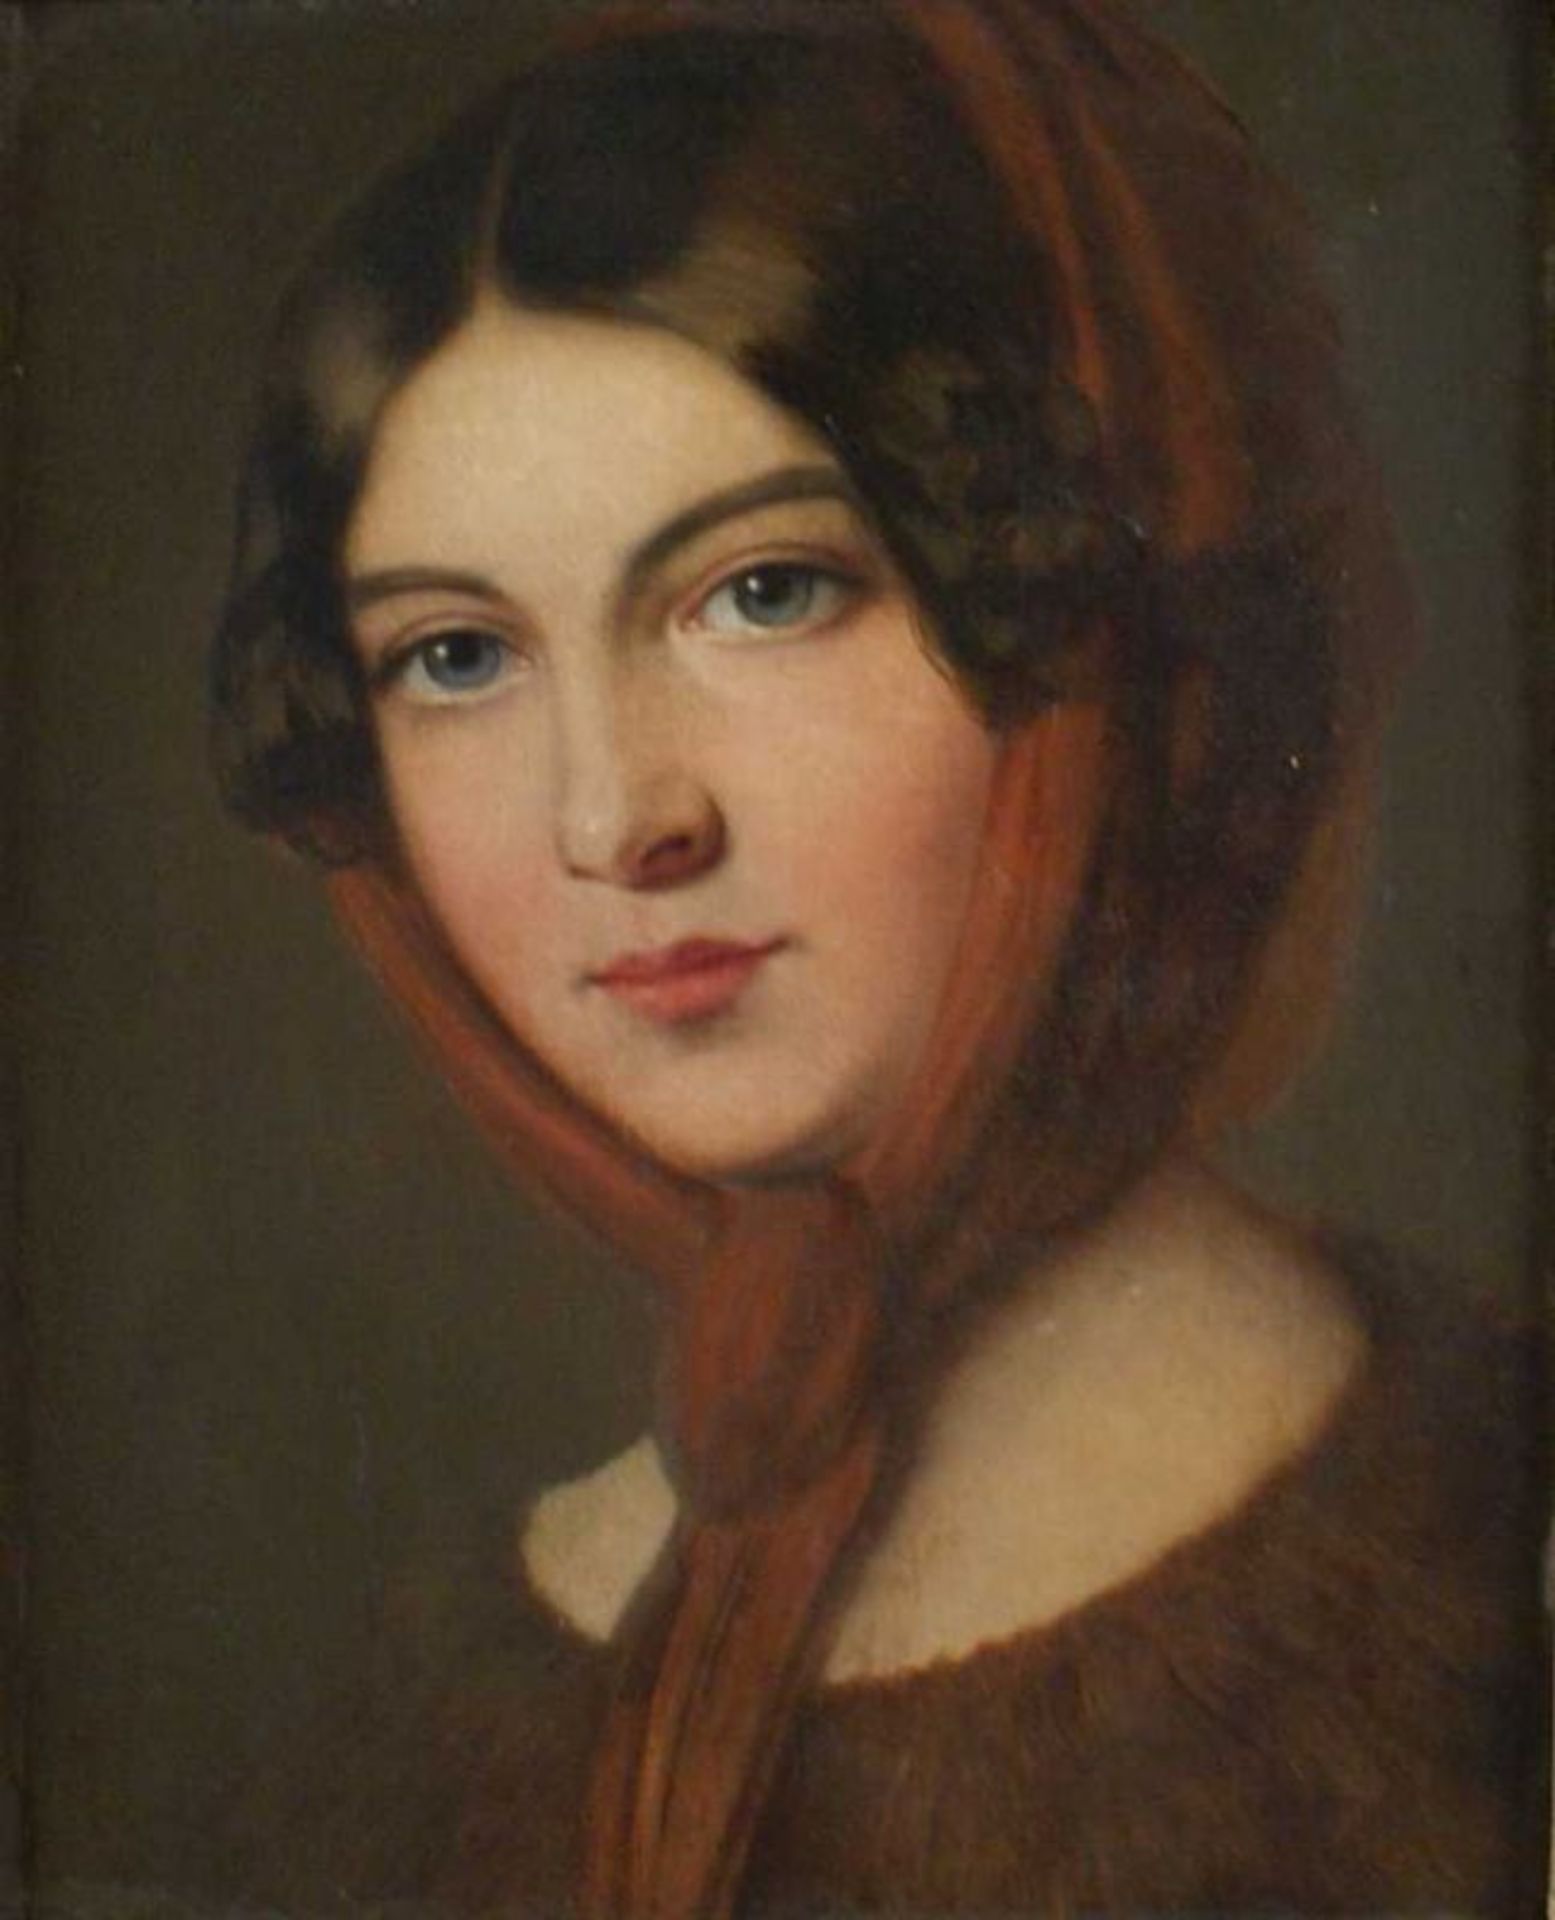 DAMEN-PORTRAIT 19. JH, Öl / Leinwand / Karton, Biedermeier-Portrait einer jungen Frau mit